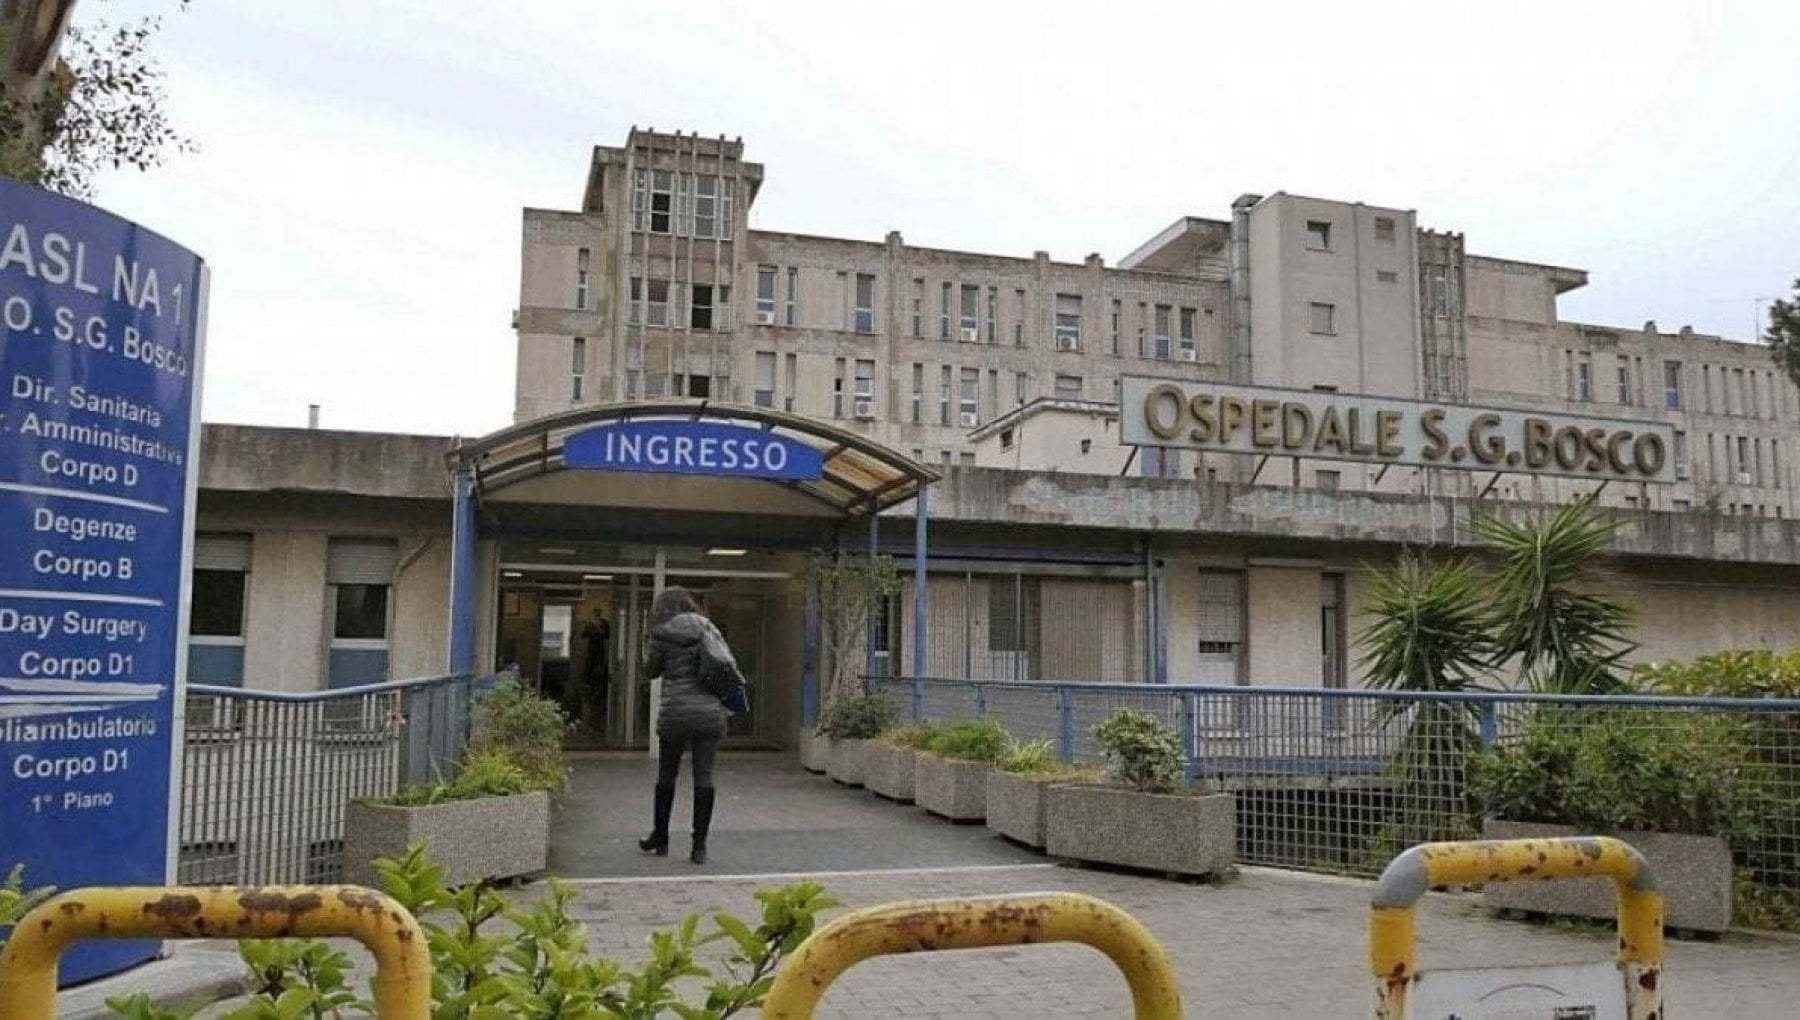 Il clan Contini controllava l'ospedale San Giovanni Bosco, 11 arresti: "Comandavano la mensa e lo spaccio interno"